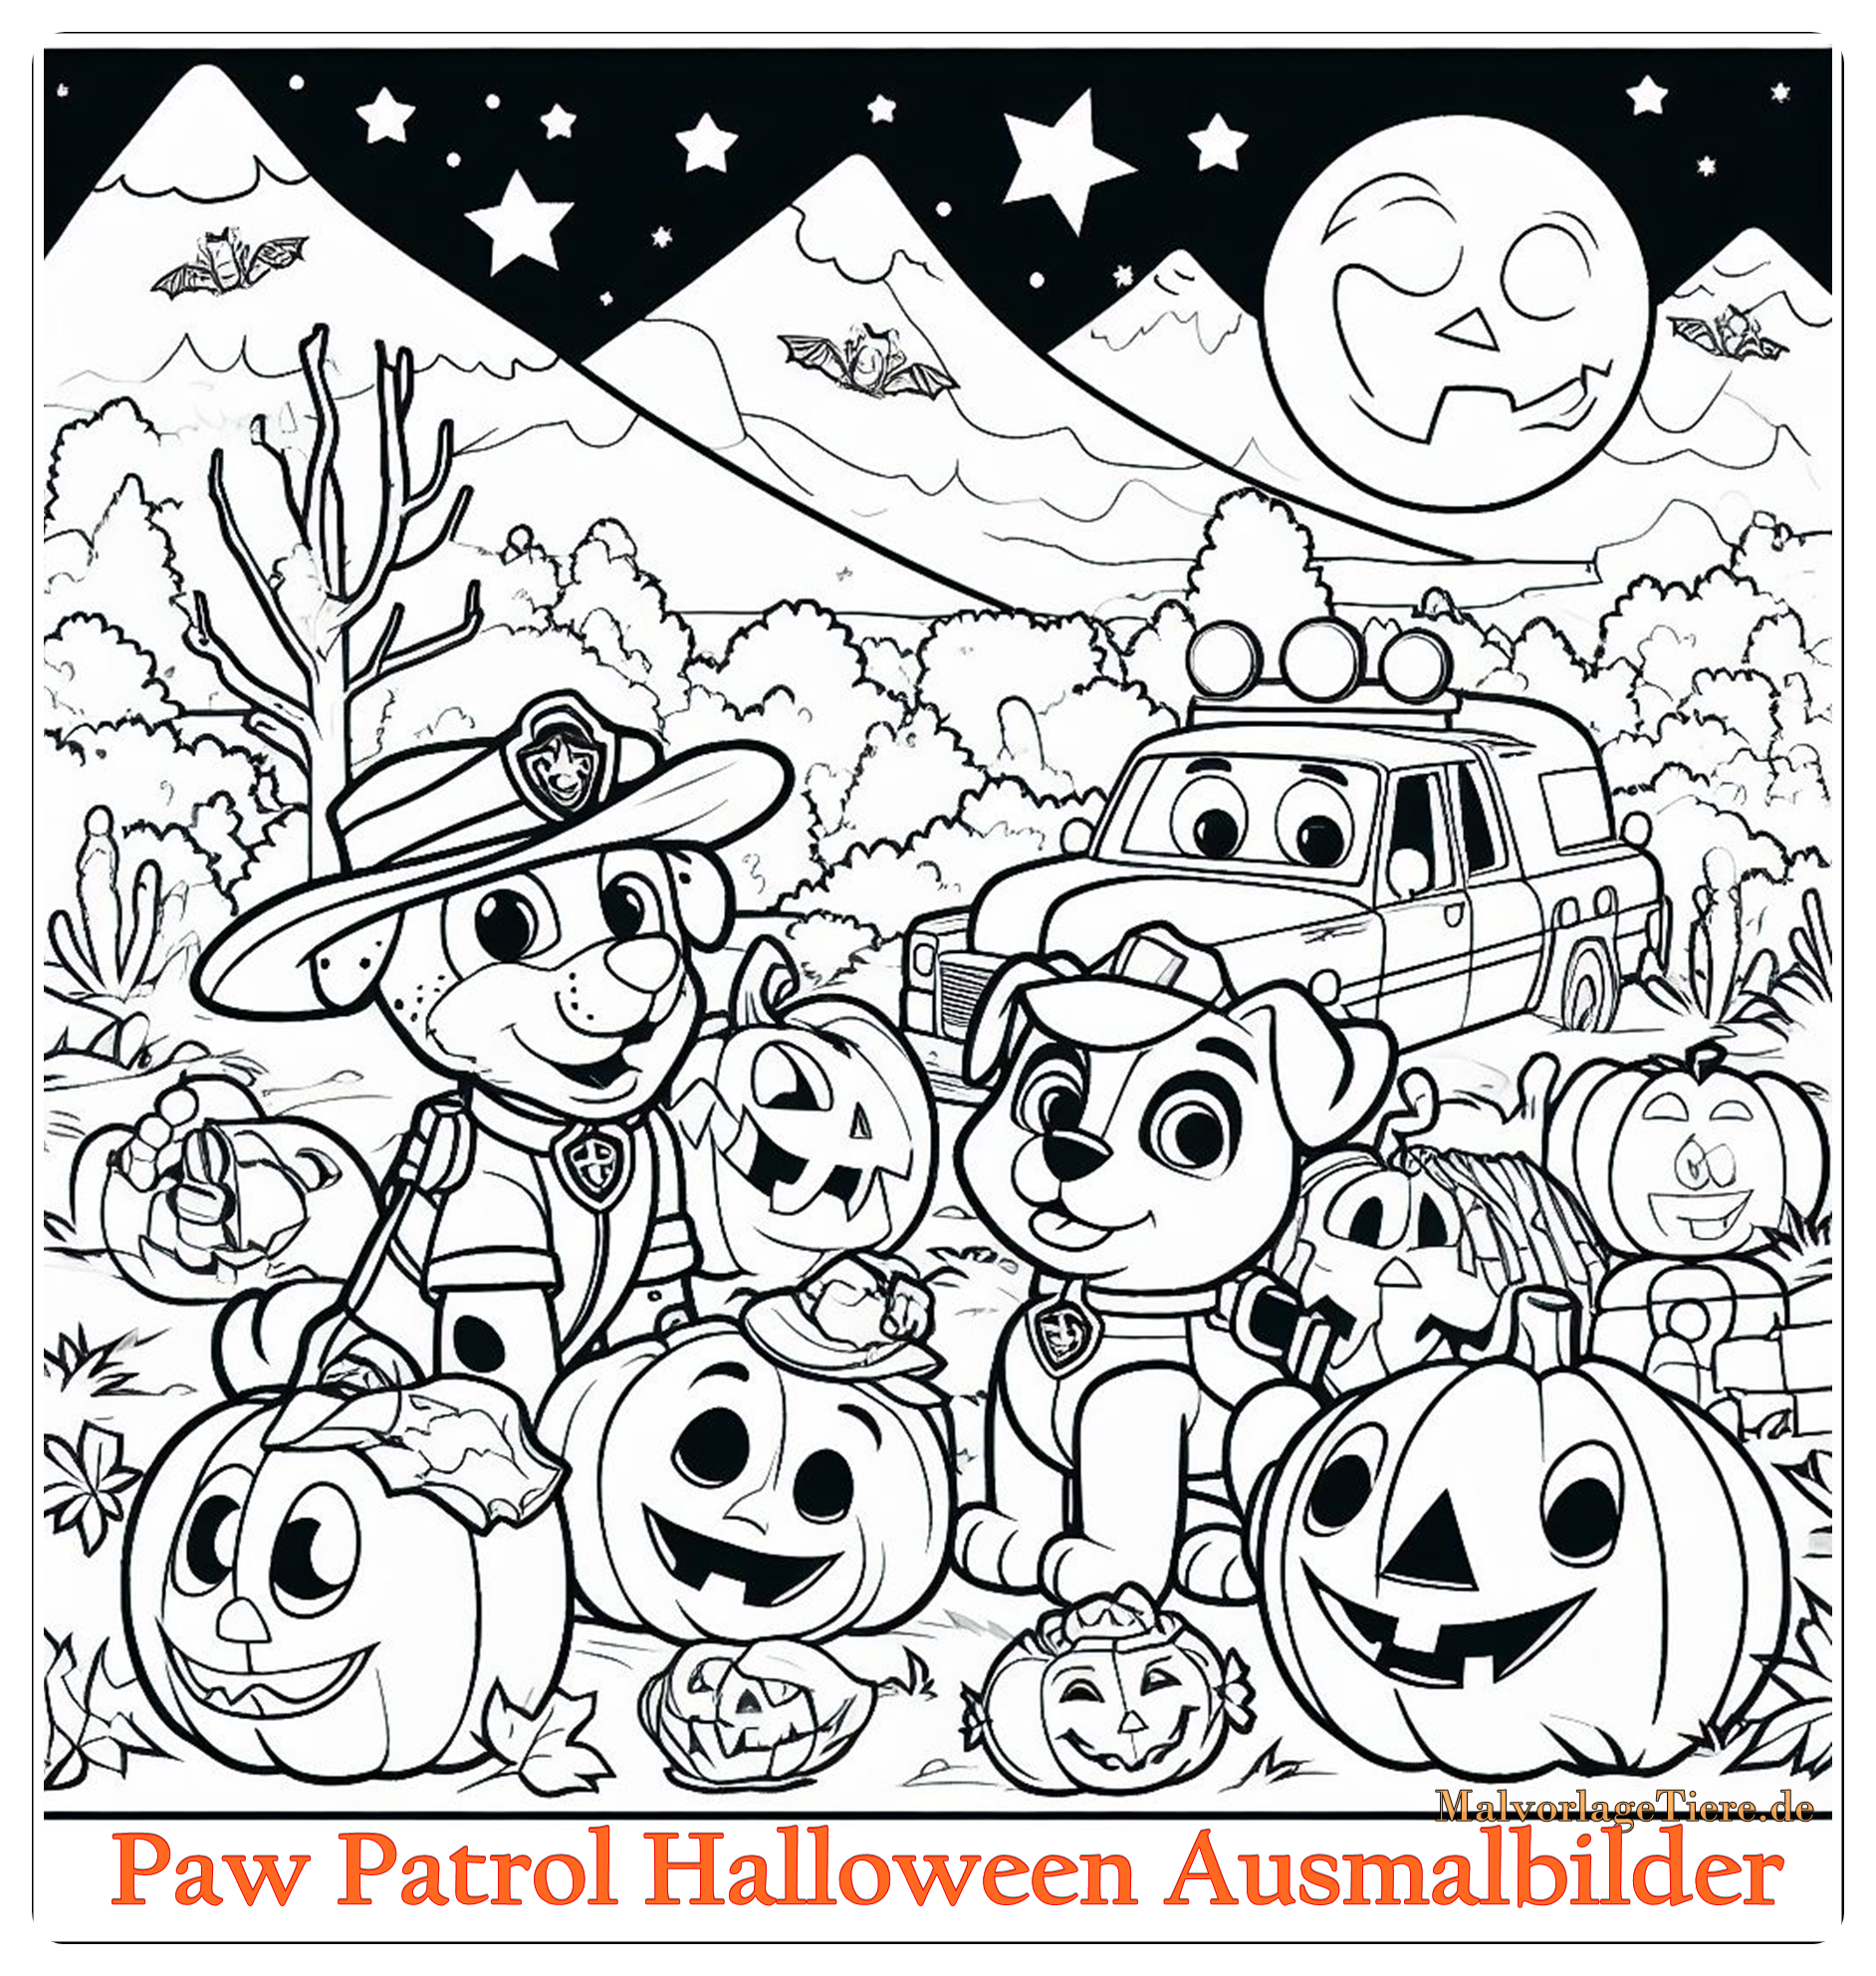 Paw Patrol Halloween Ausmalbilder 03 by malvorlagetiere.de